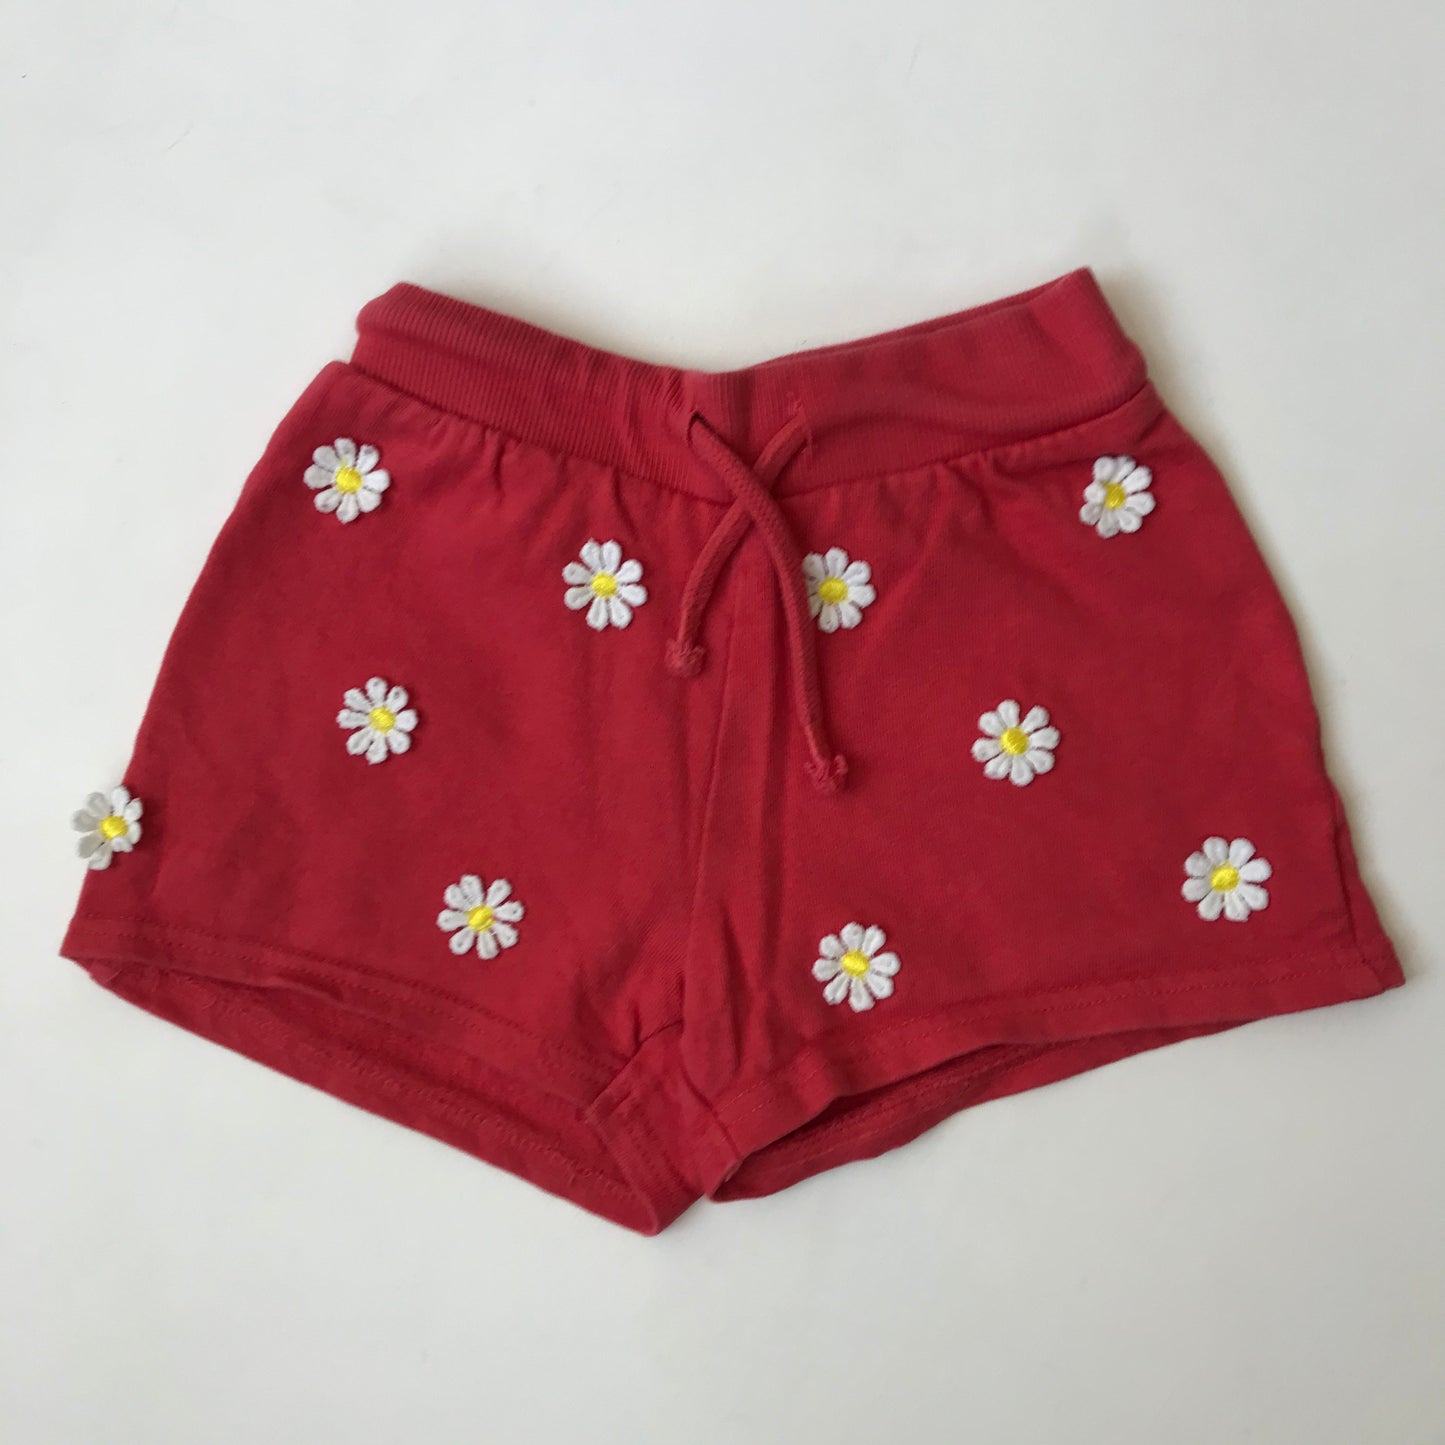 Shorts - Daisies - Age 6